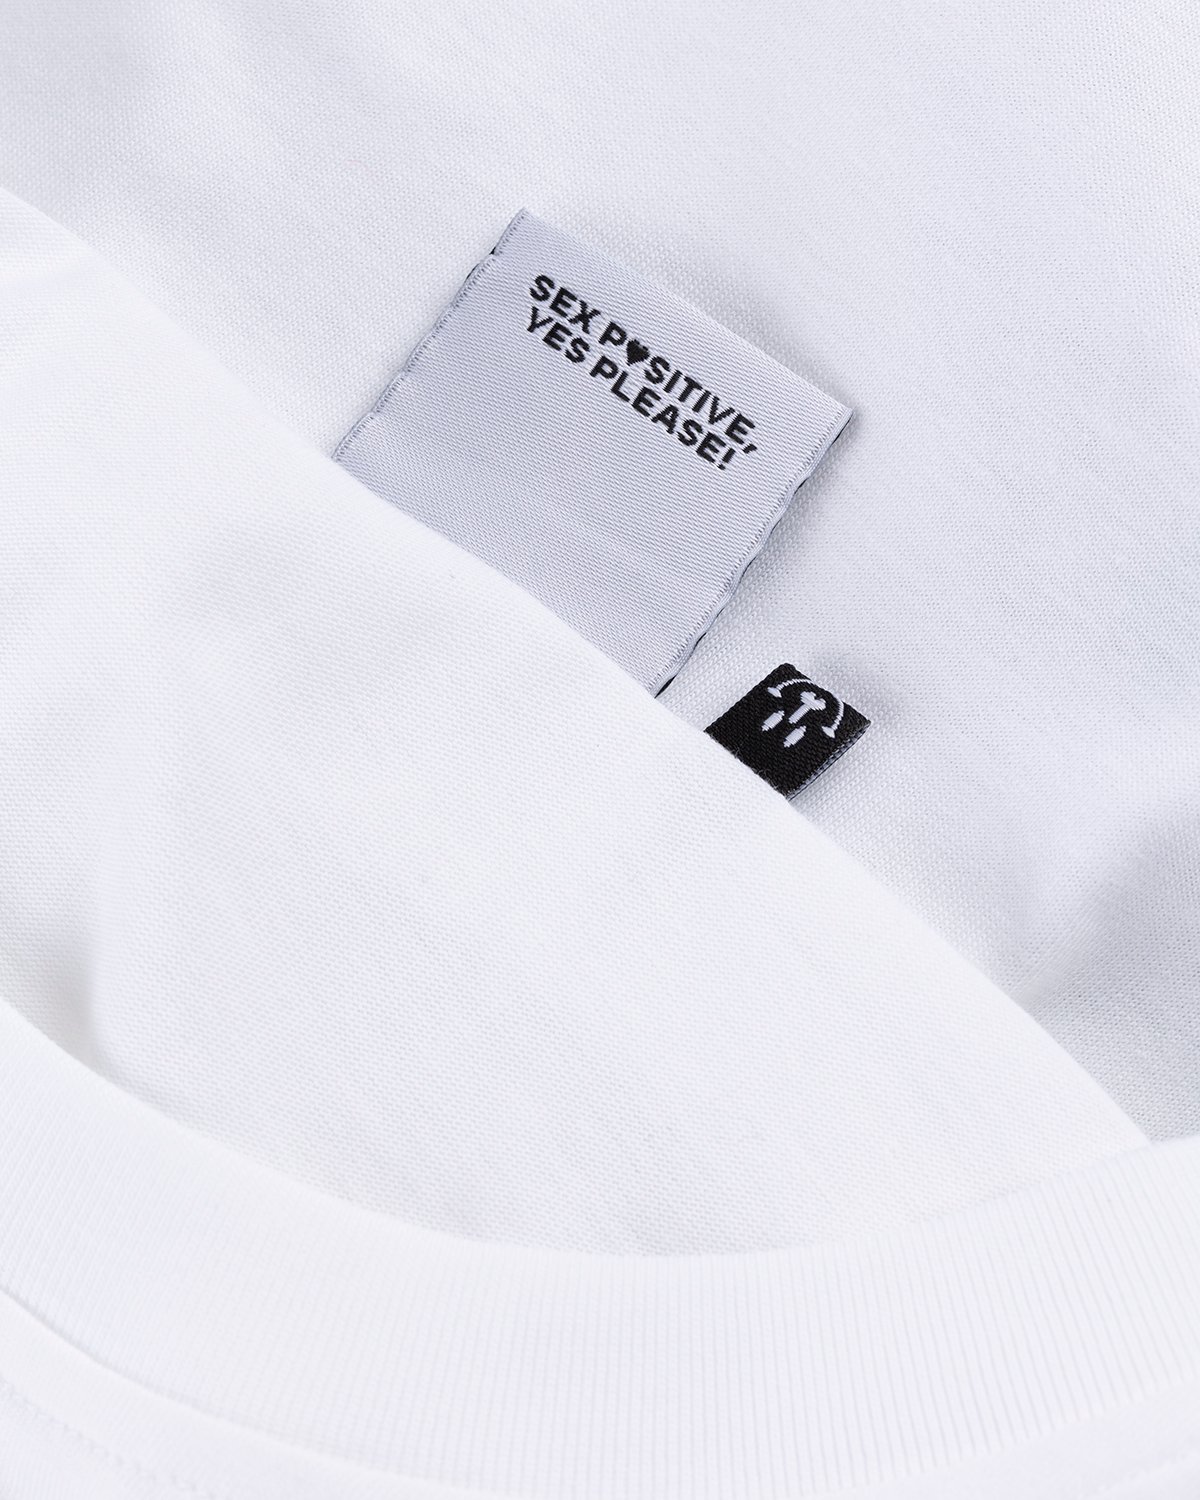 Carne Bollente - Cunni sur la Pelouse T-Shirt White - Clothing - White - Image 4